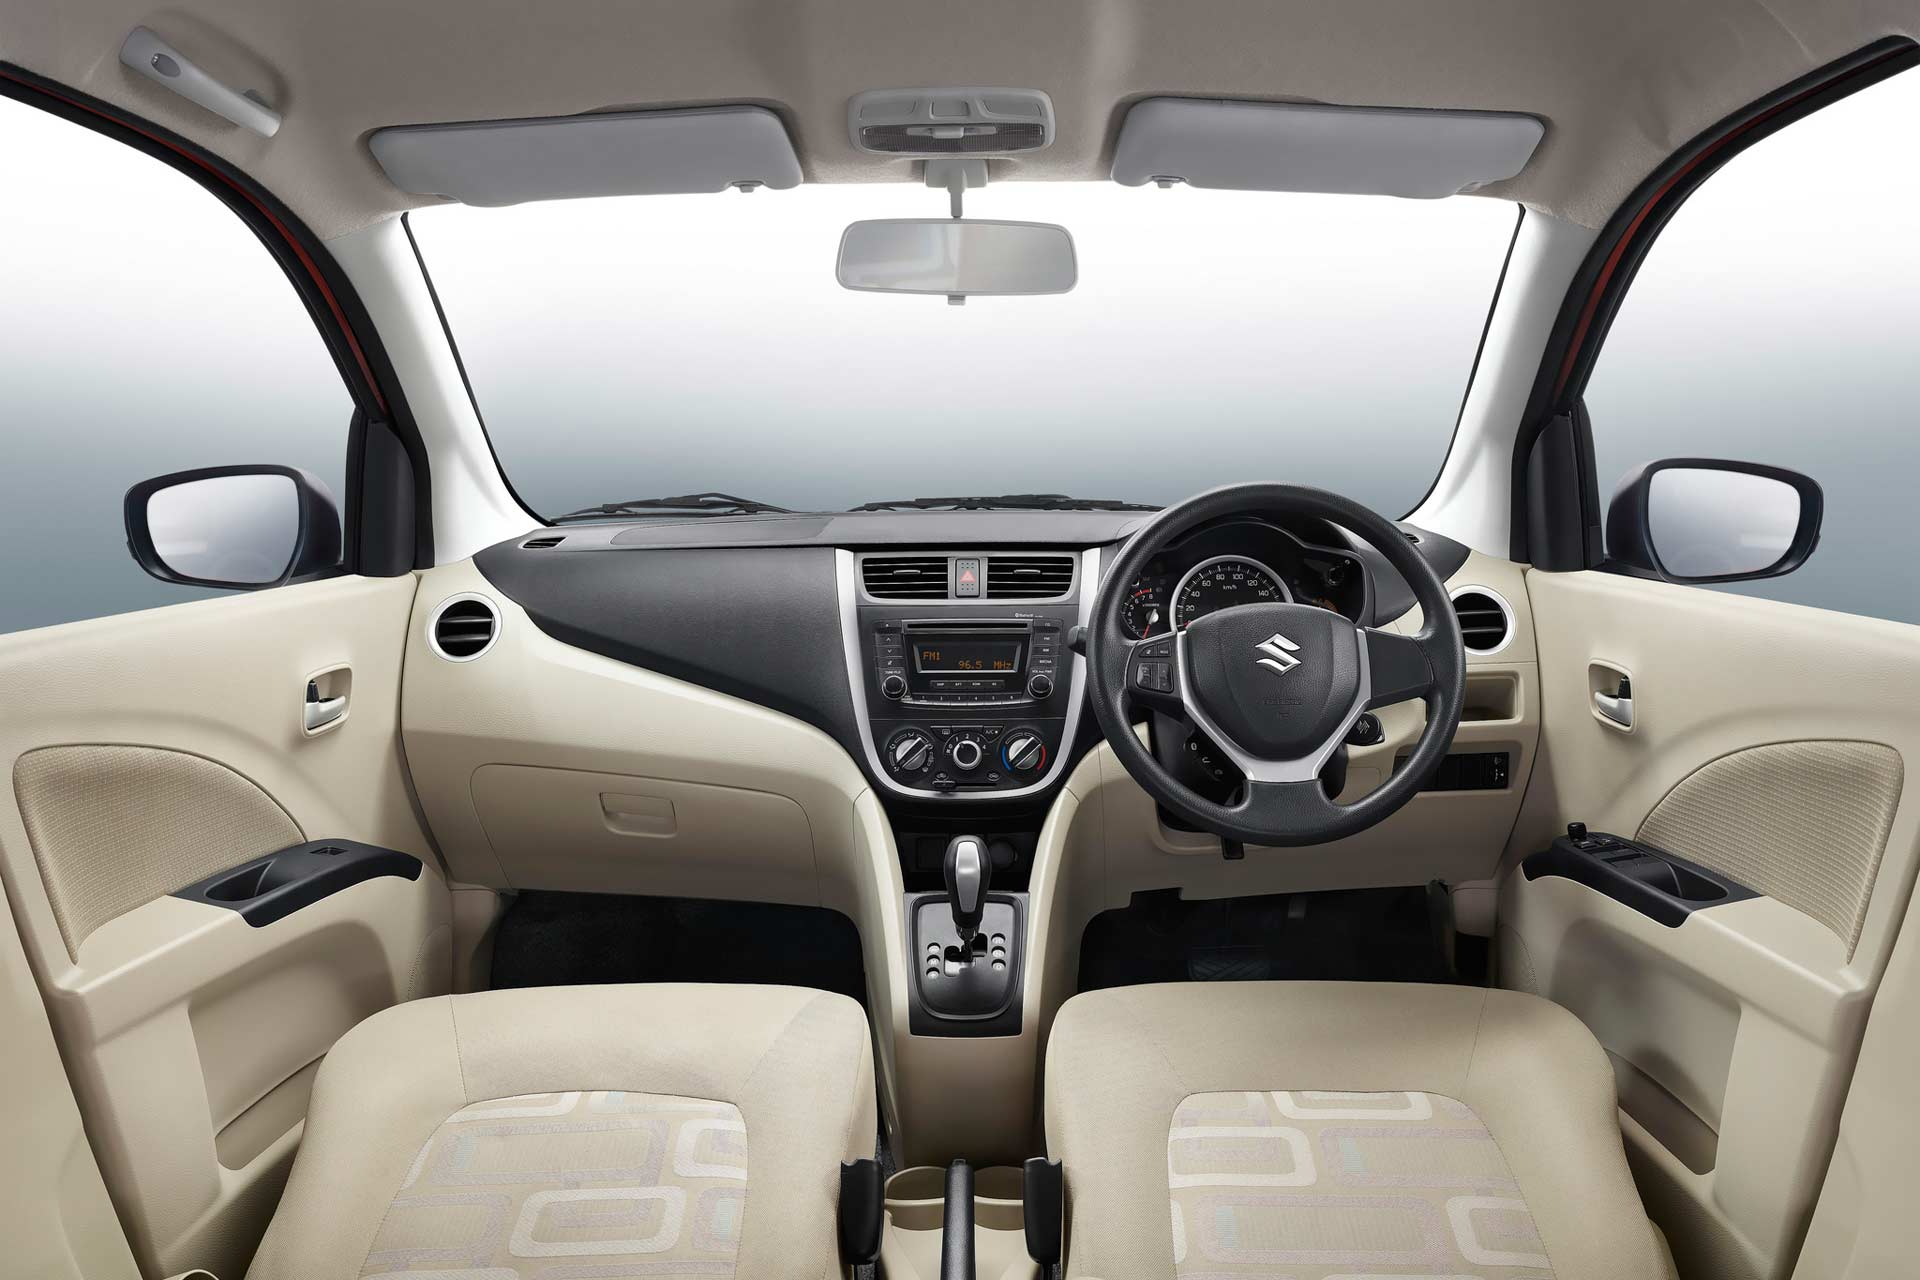 2017-Maruti-Suzuki-Celerio-facelift-interior